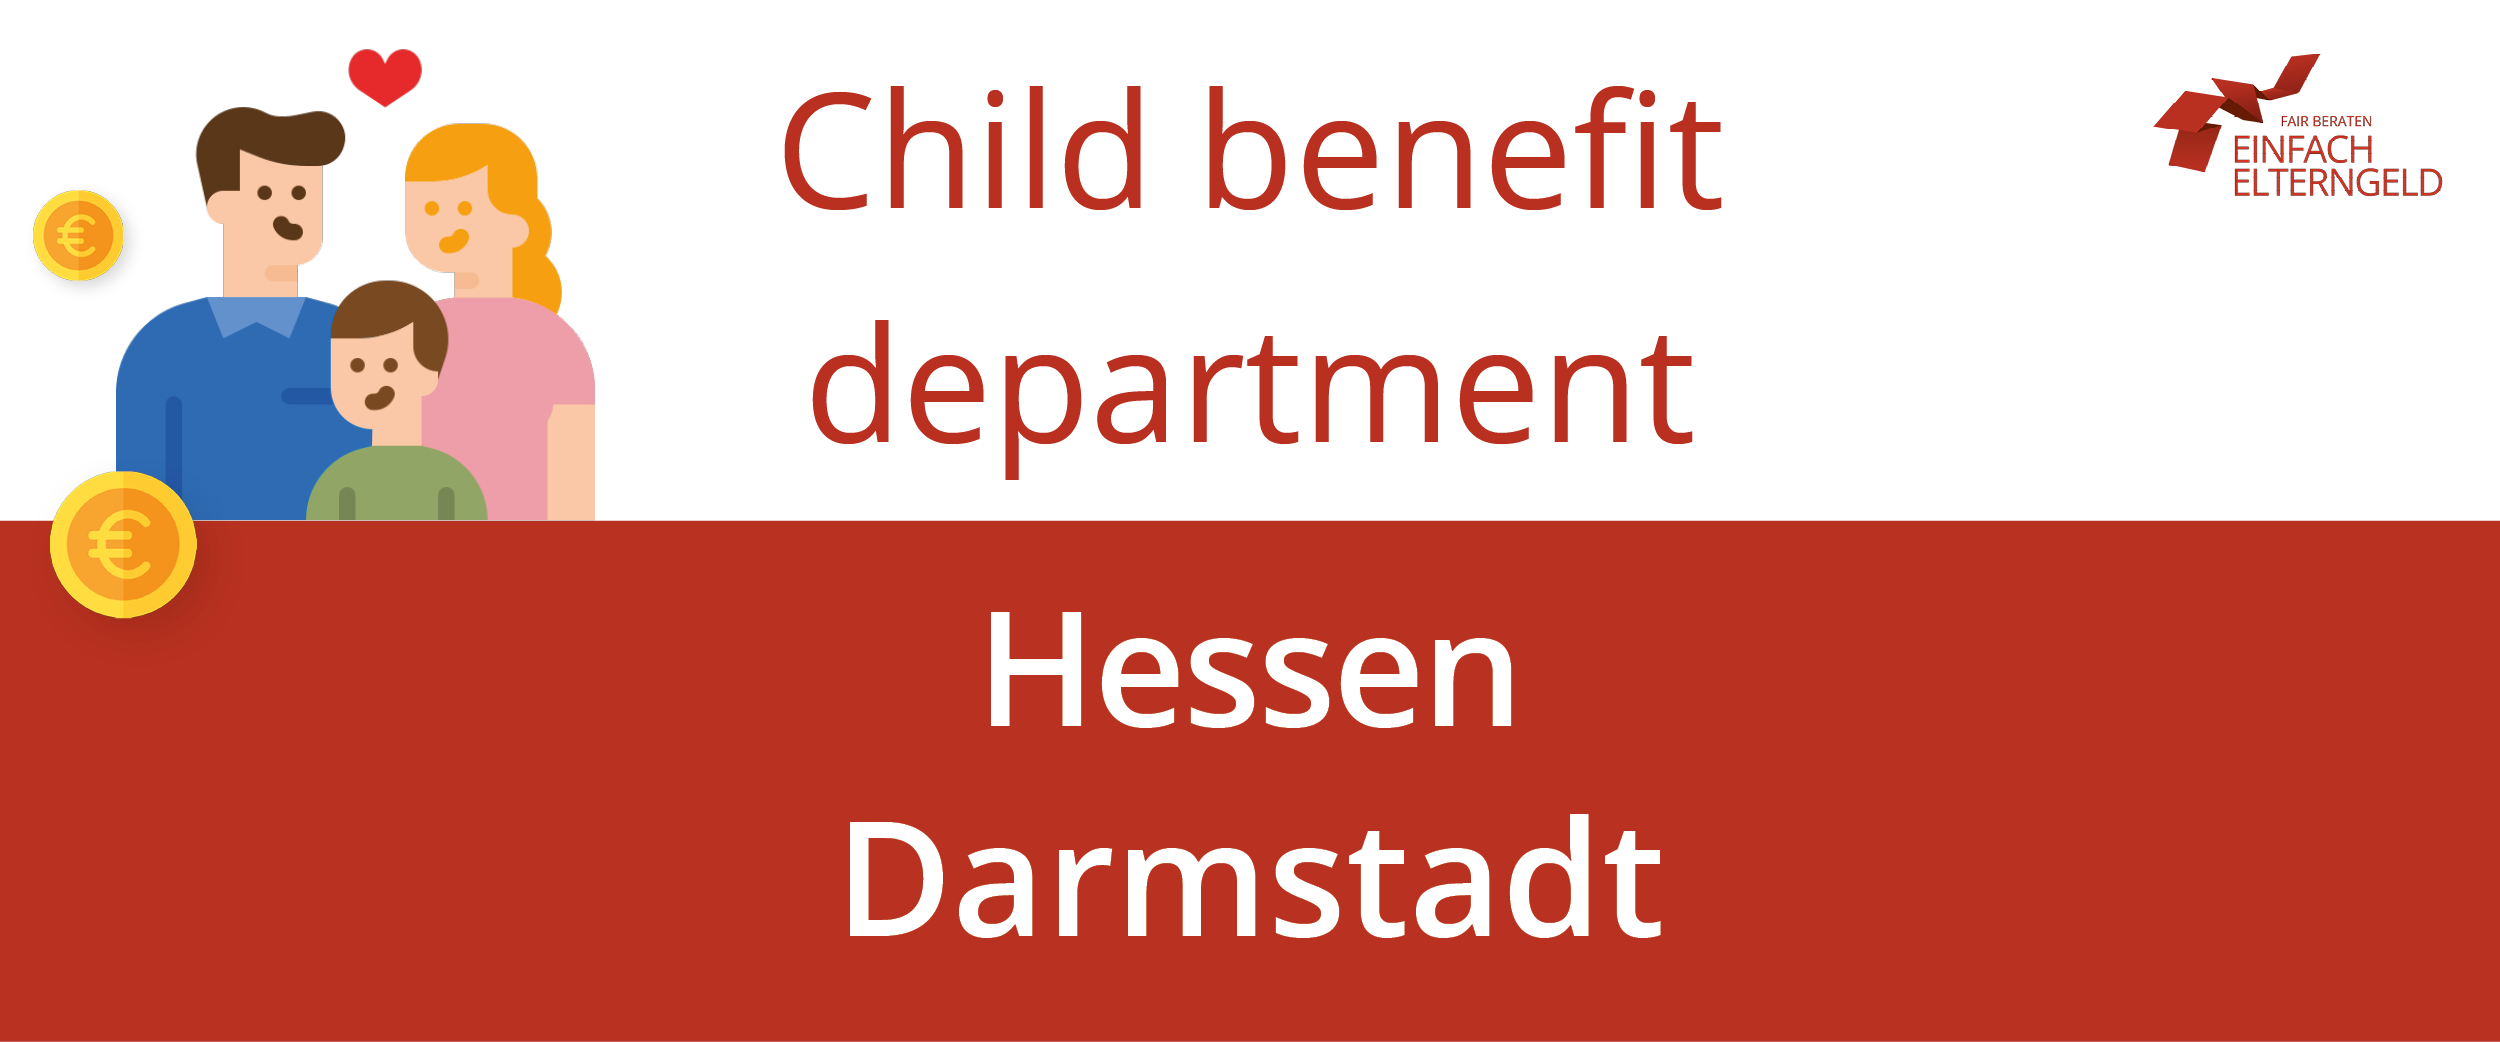 We present you the Child benefit department Hessen Darmstadt.